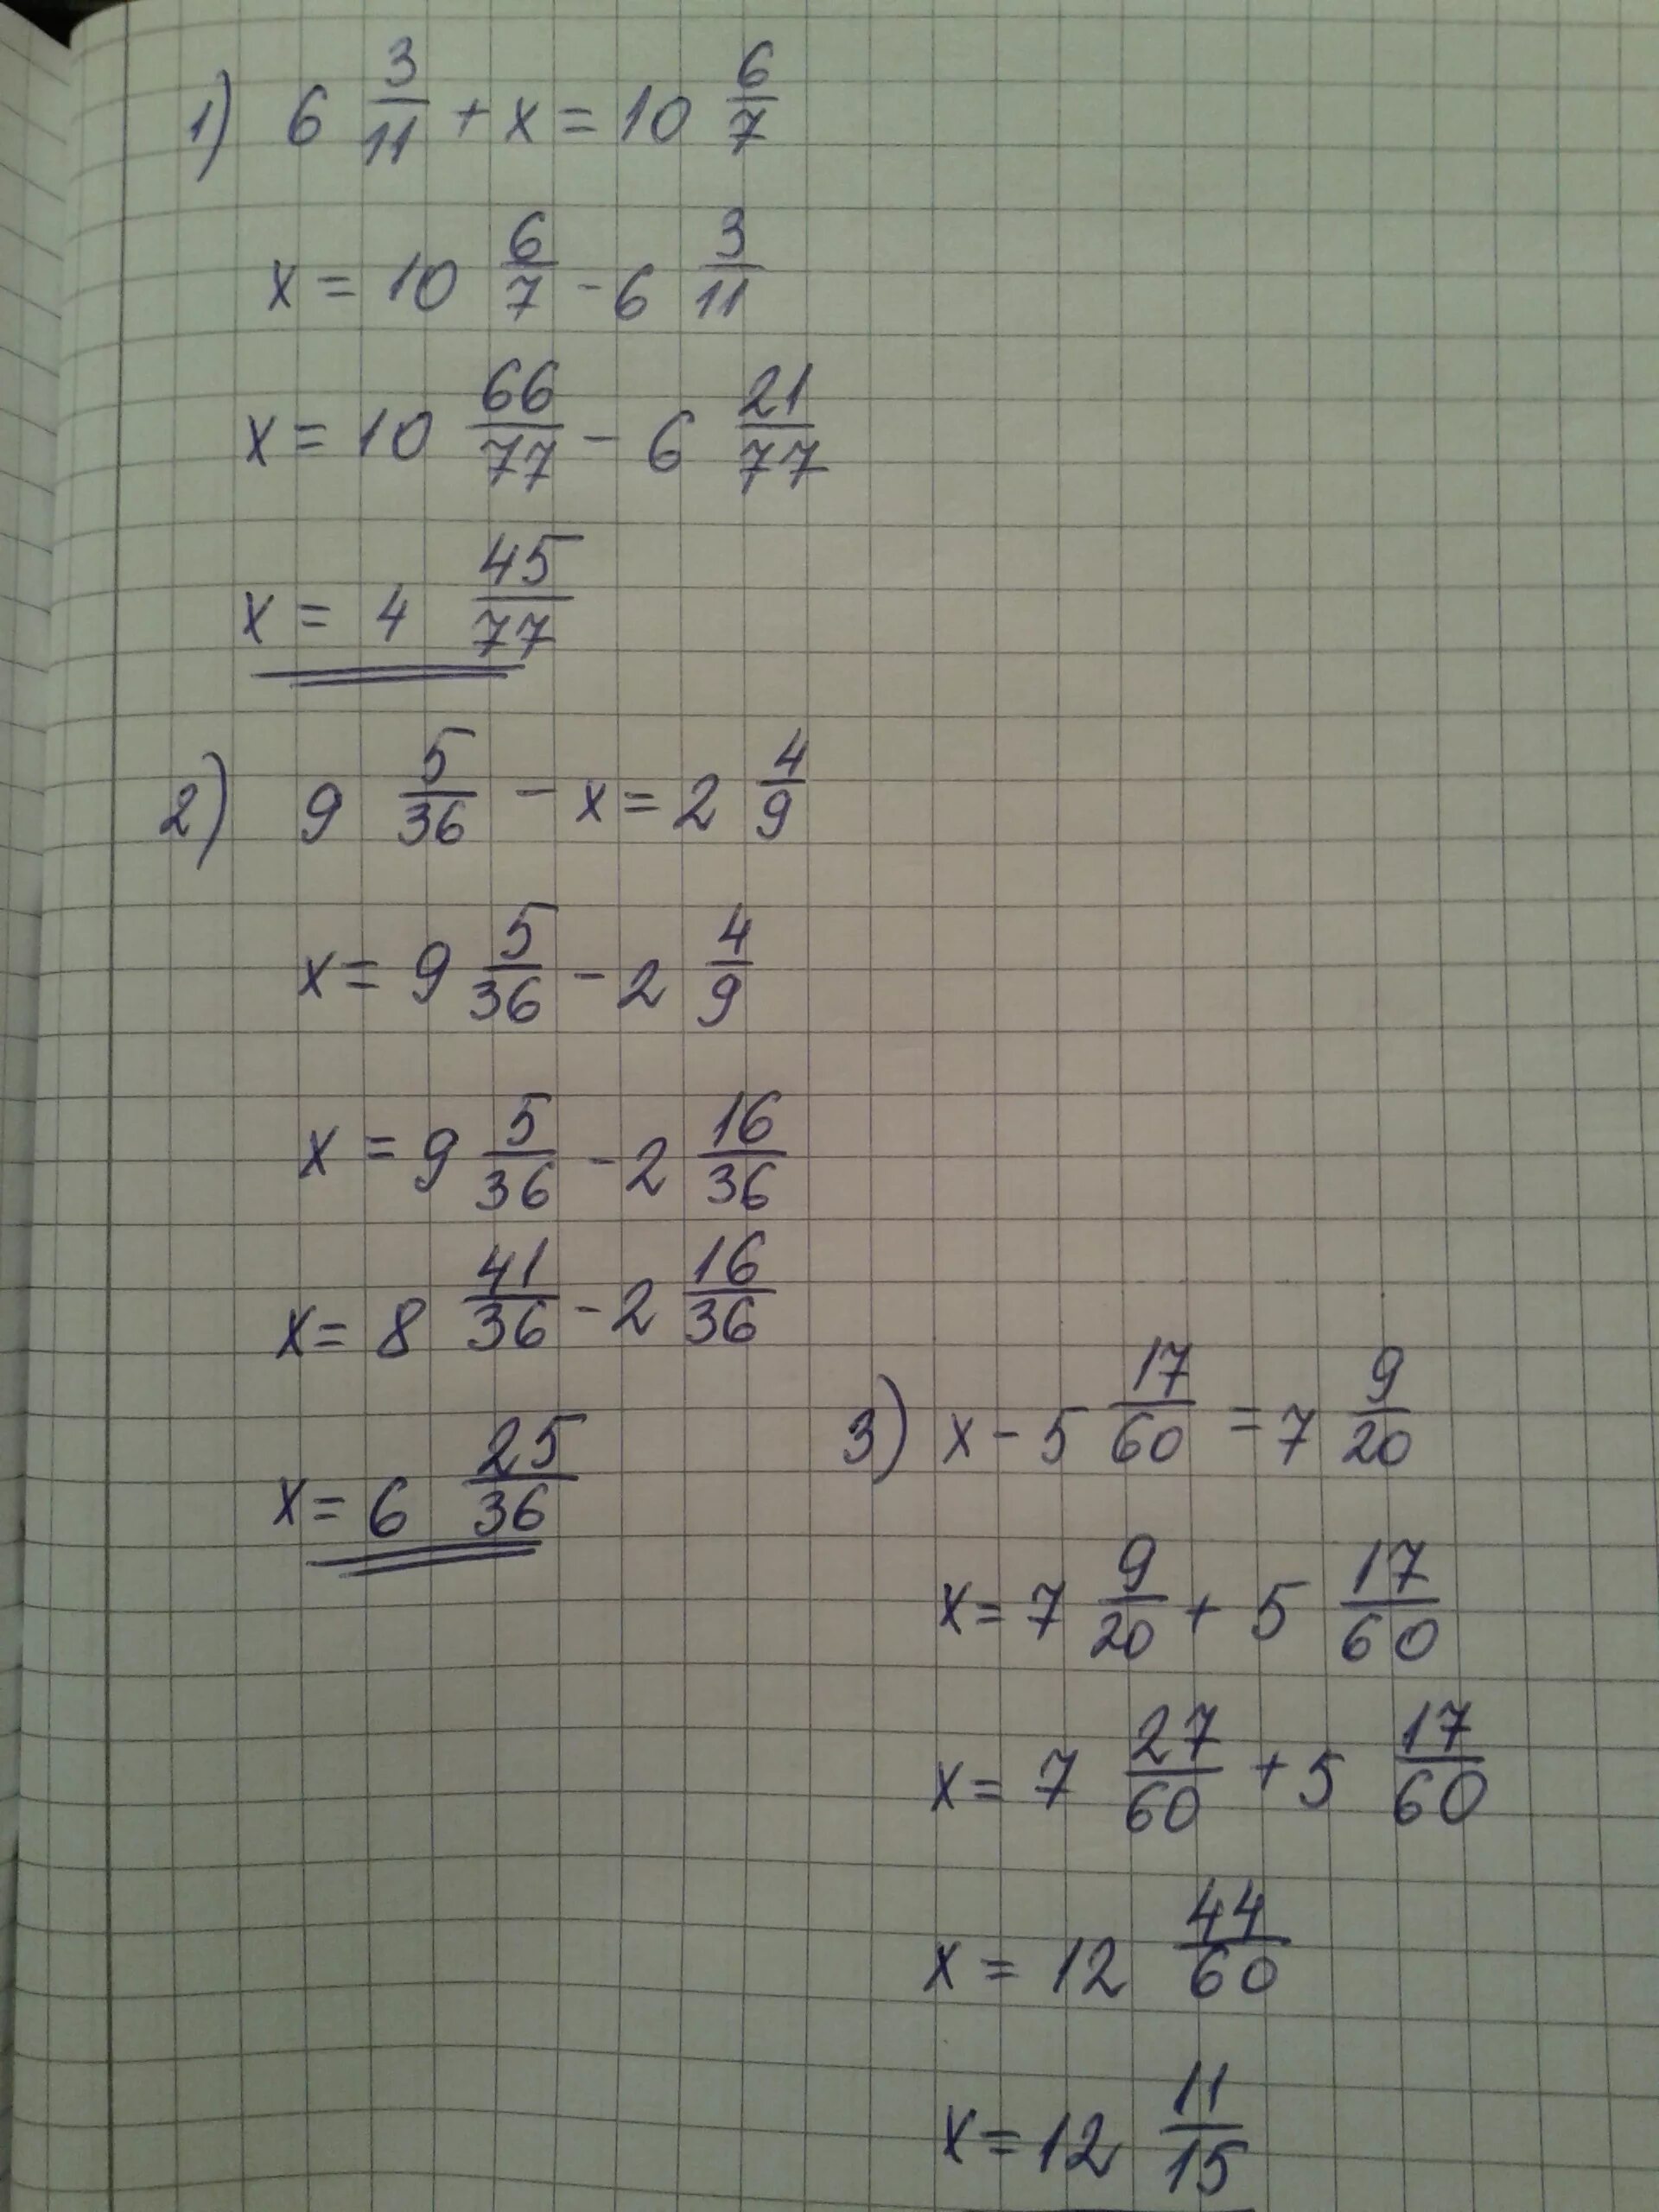 9x 10 5x 2 20 решите. Х2-11х/6+1/2. Х-3 7/9=5 1/6. 7-2х=9-3х 11х=6+5(2х-1). (Х-1):2-(У-1):6=5/3.